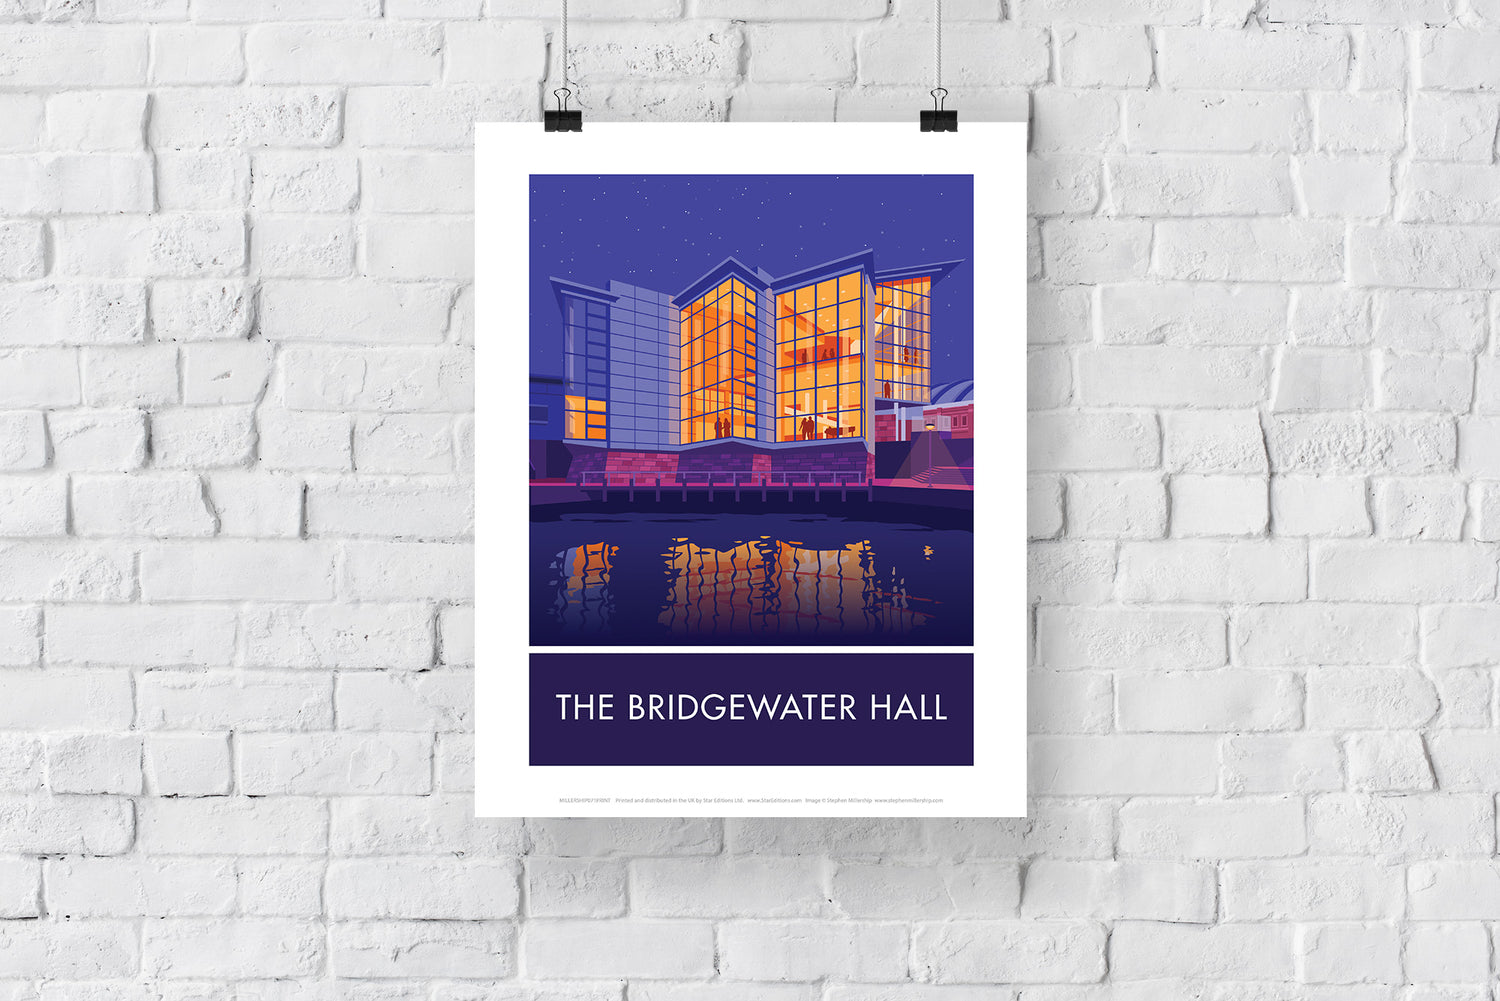 The Bridgewater Hall, Manchester, Cheshire - Art Print